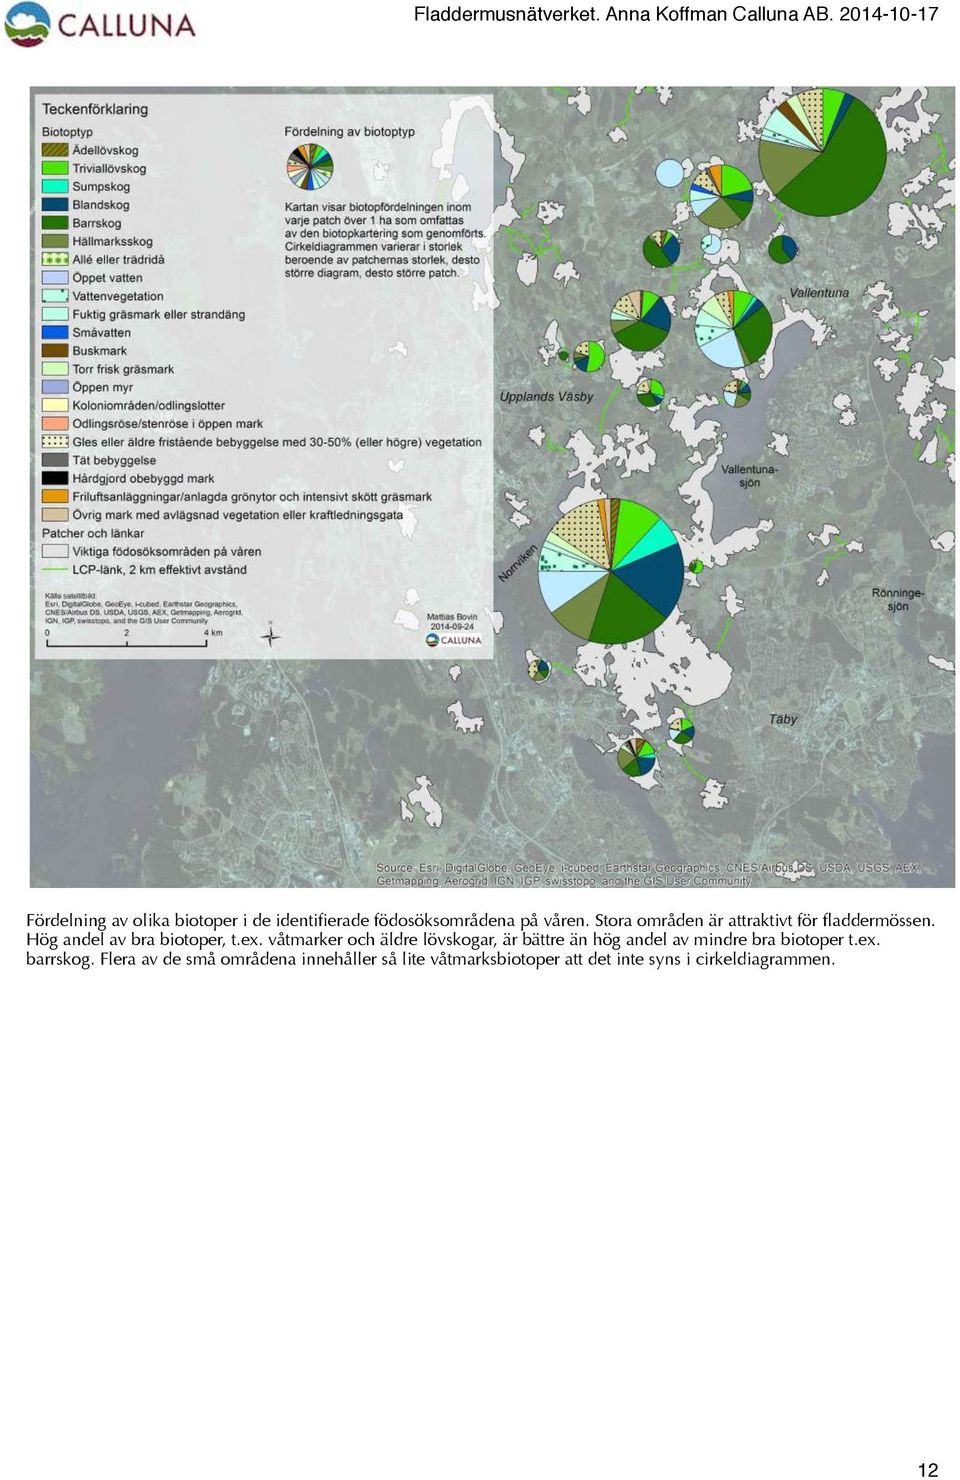 våtmarker och äldre lövskogar, är bättre än hög andel av mindre bra biotoper t.ex.